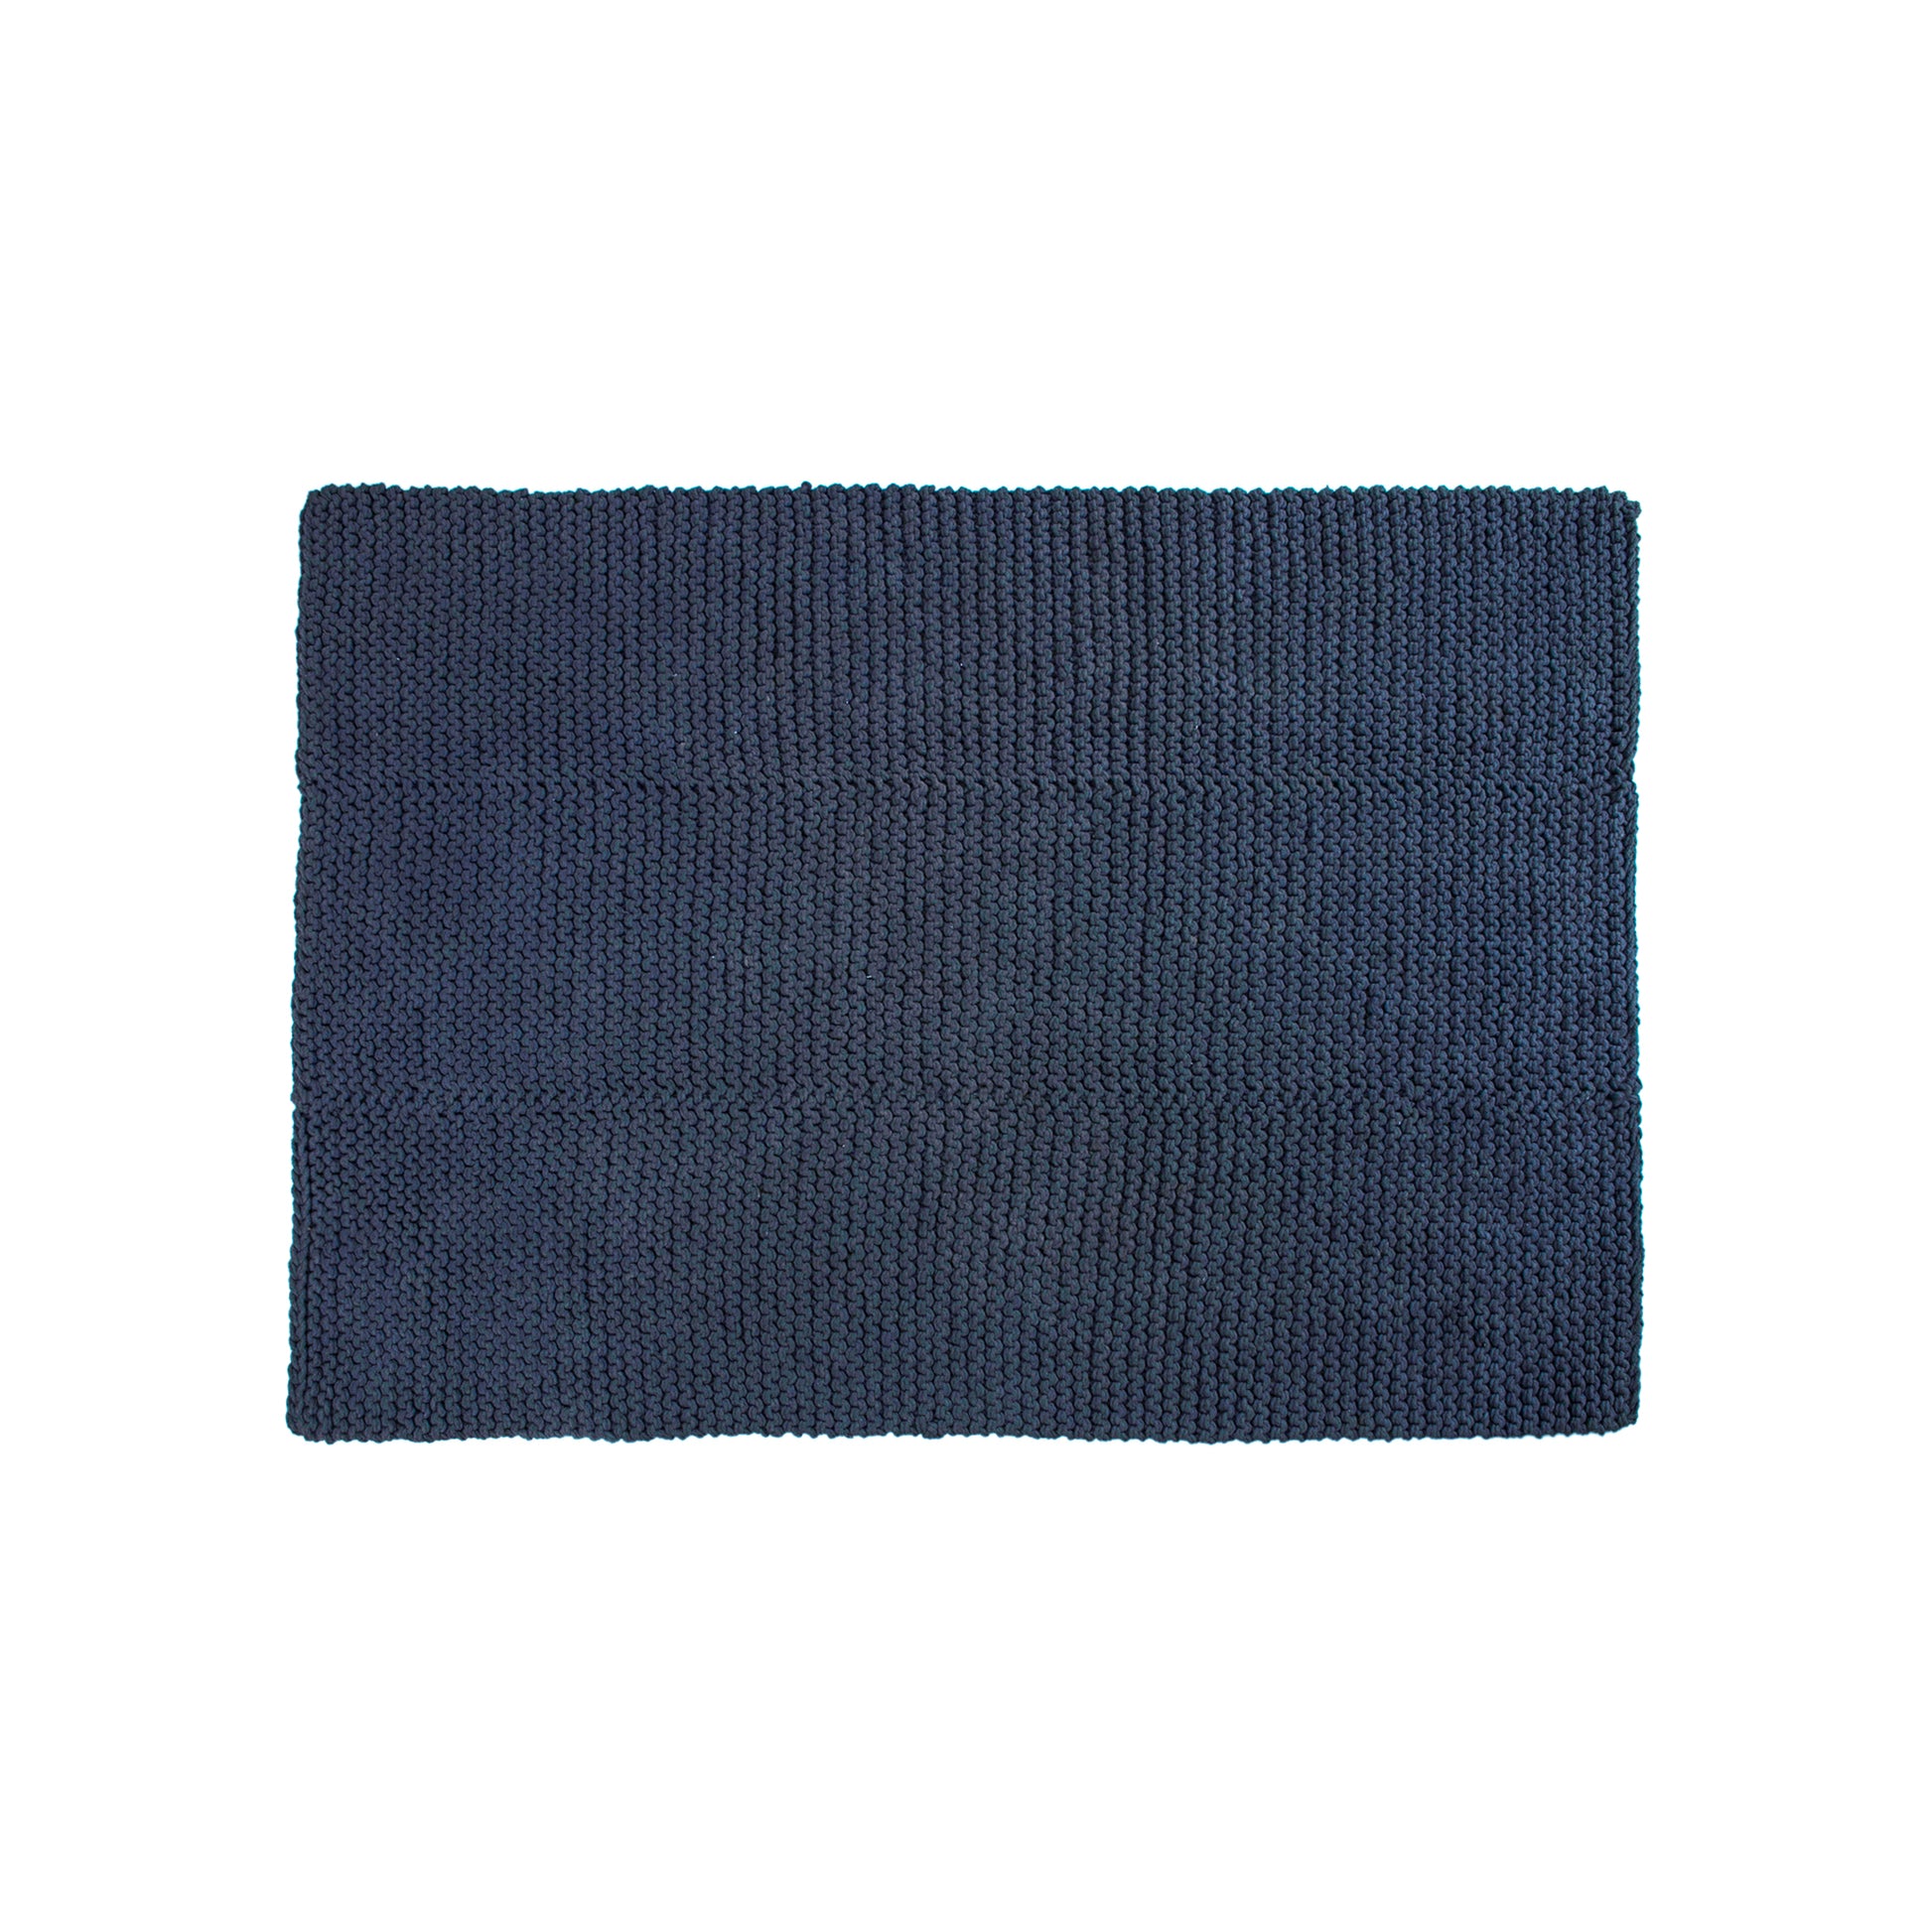 Tapete em tricô artesanal Marinho, com fio 100% algodão. Dimensões: Largura - 150cm; Comprimento - 200cm. 